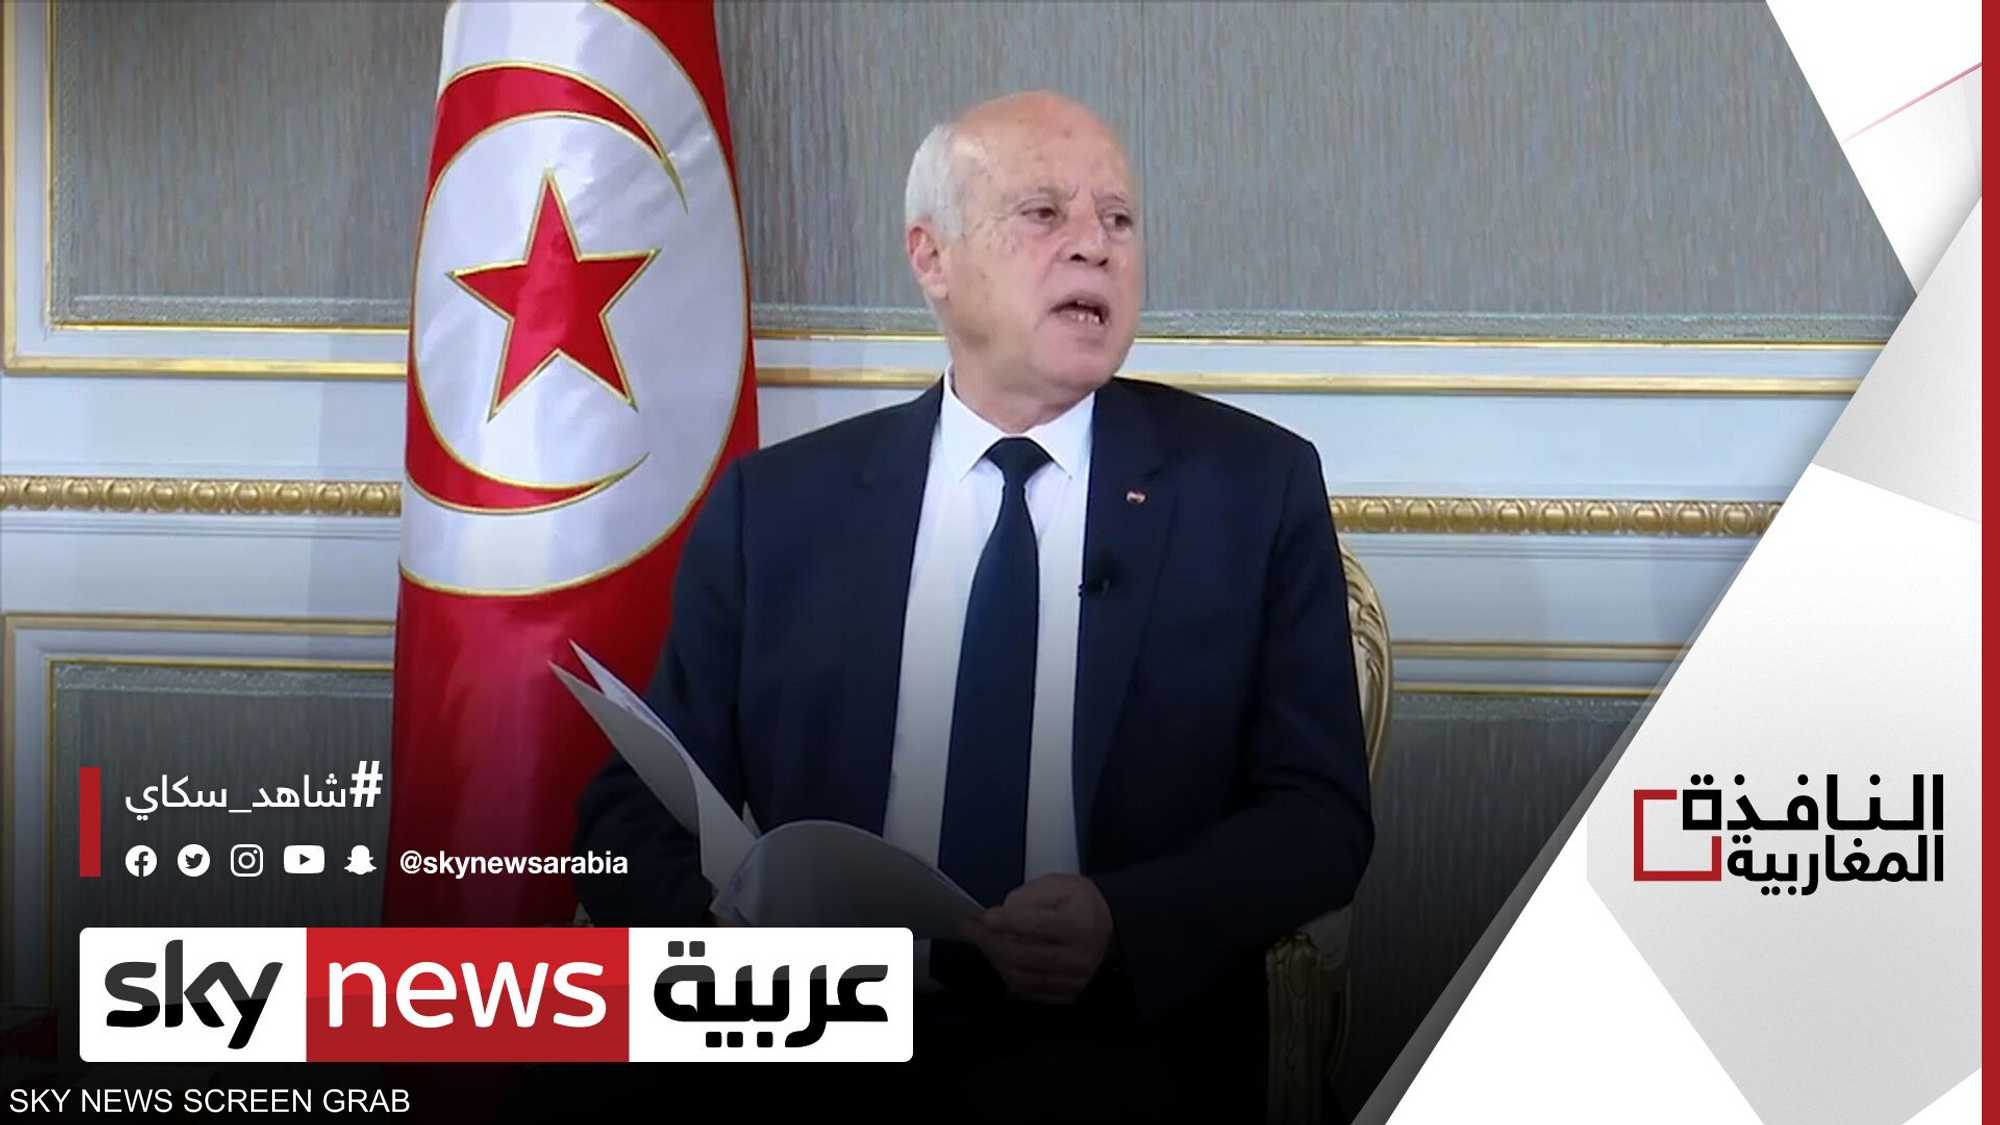 جدل بتونس بعد قرار سعيد بشأن مجلس القضاء